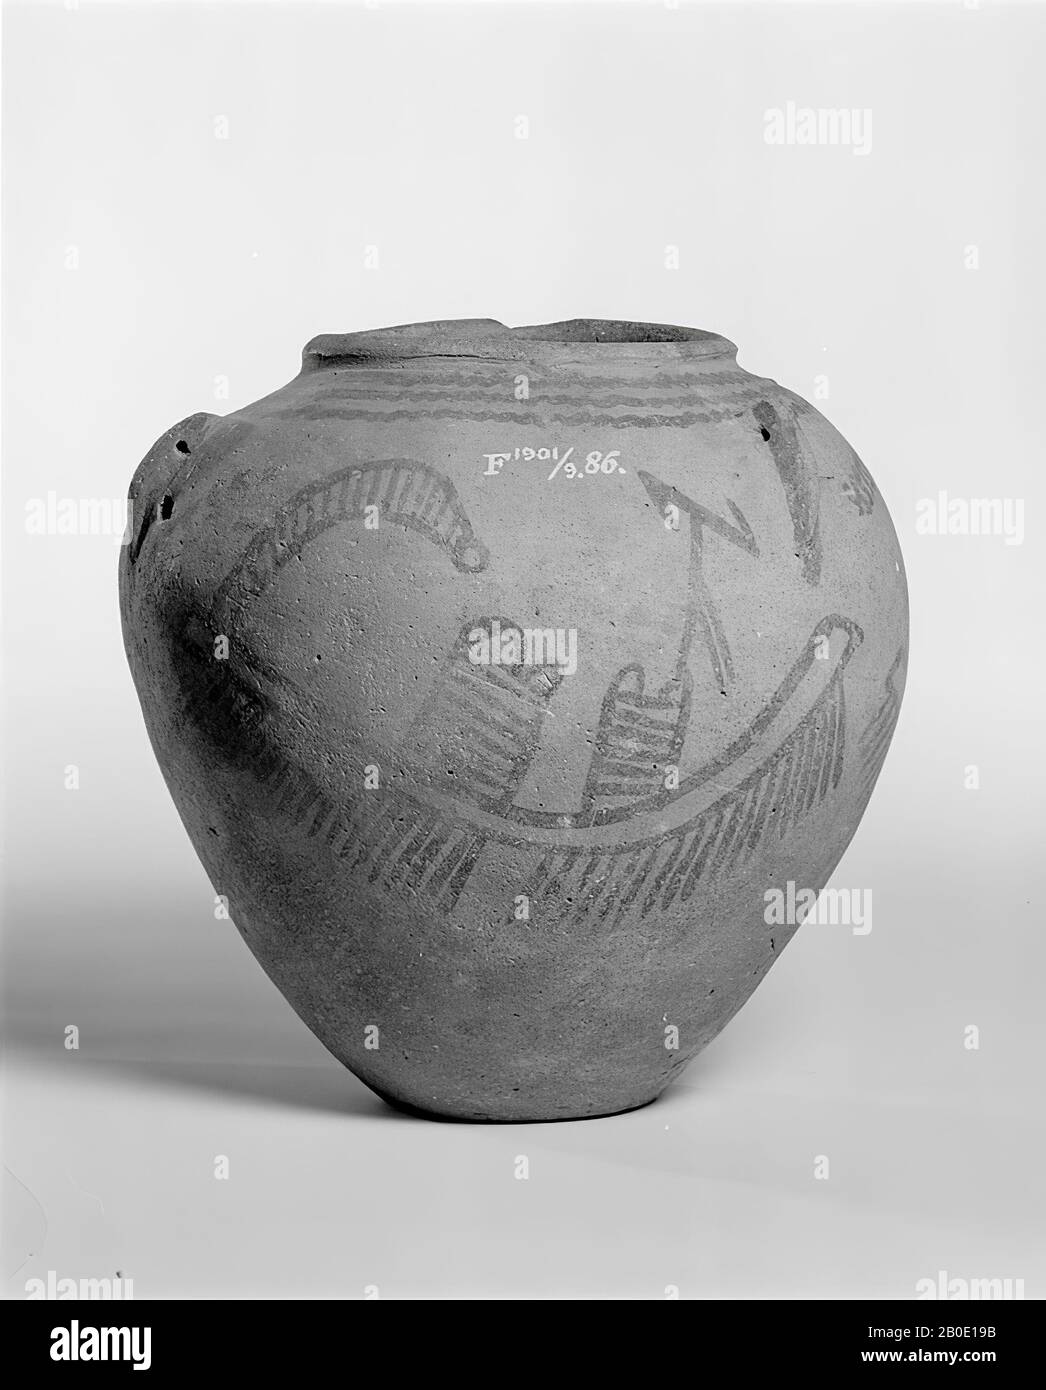 Ägypten, Topf, Steingut, 19,5 × 19 cm, Vorgeschichte, Nagada II d1 Periode 3500-3300 v. Chr., Ägypten Stockfoto